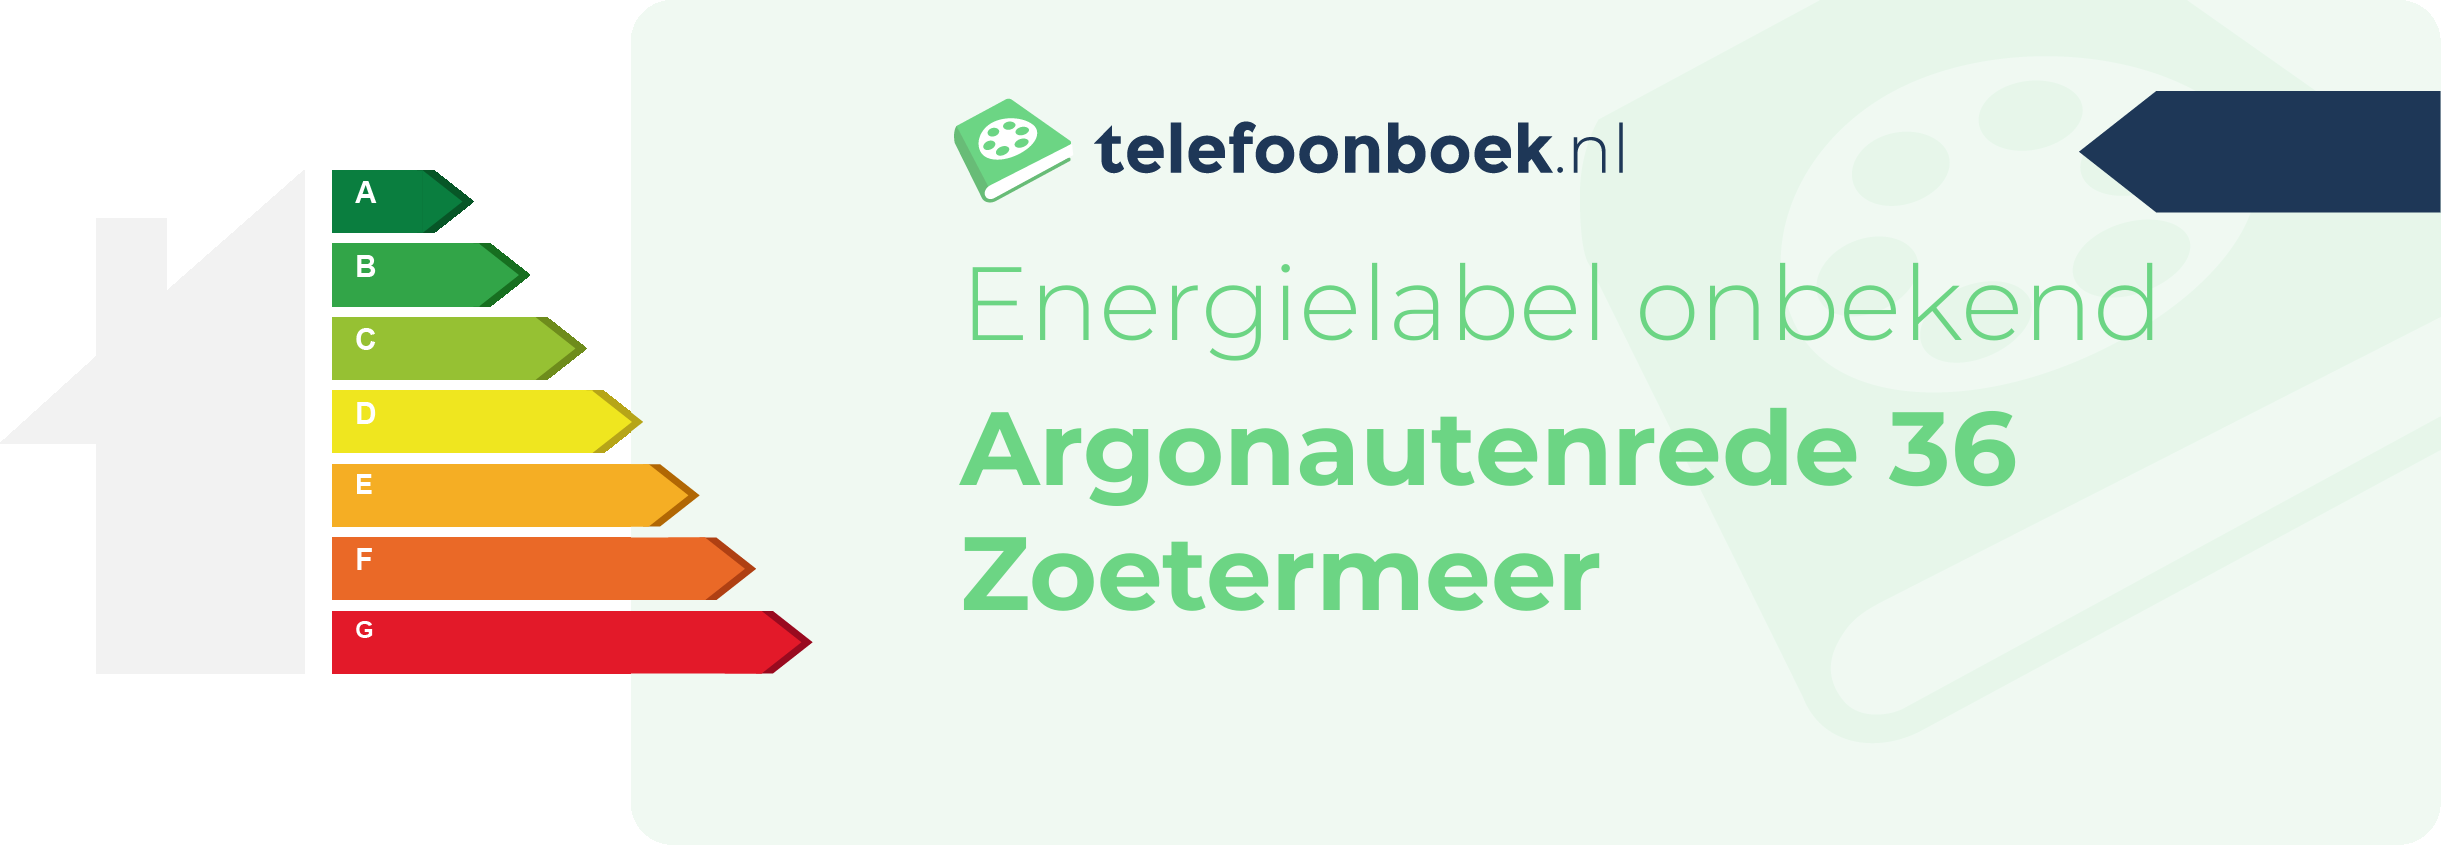 Energielabel Argonautenrede 36 Zoetermeer